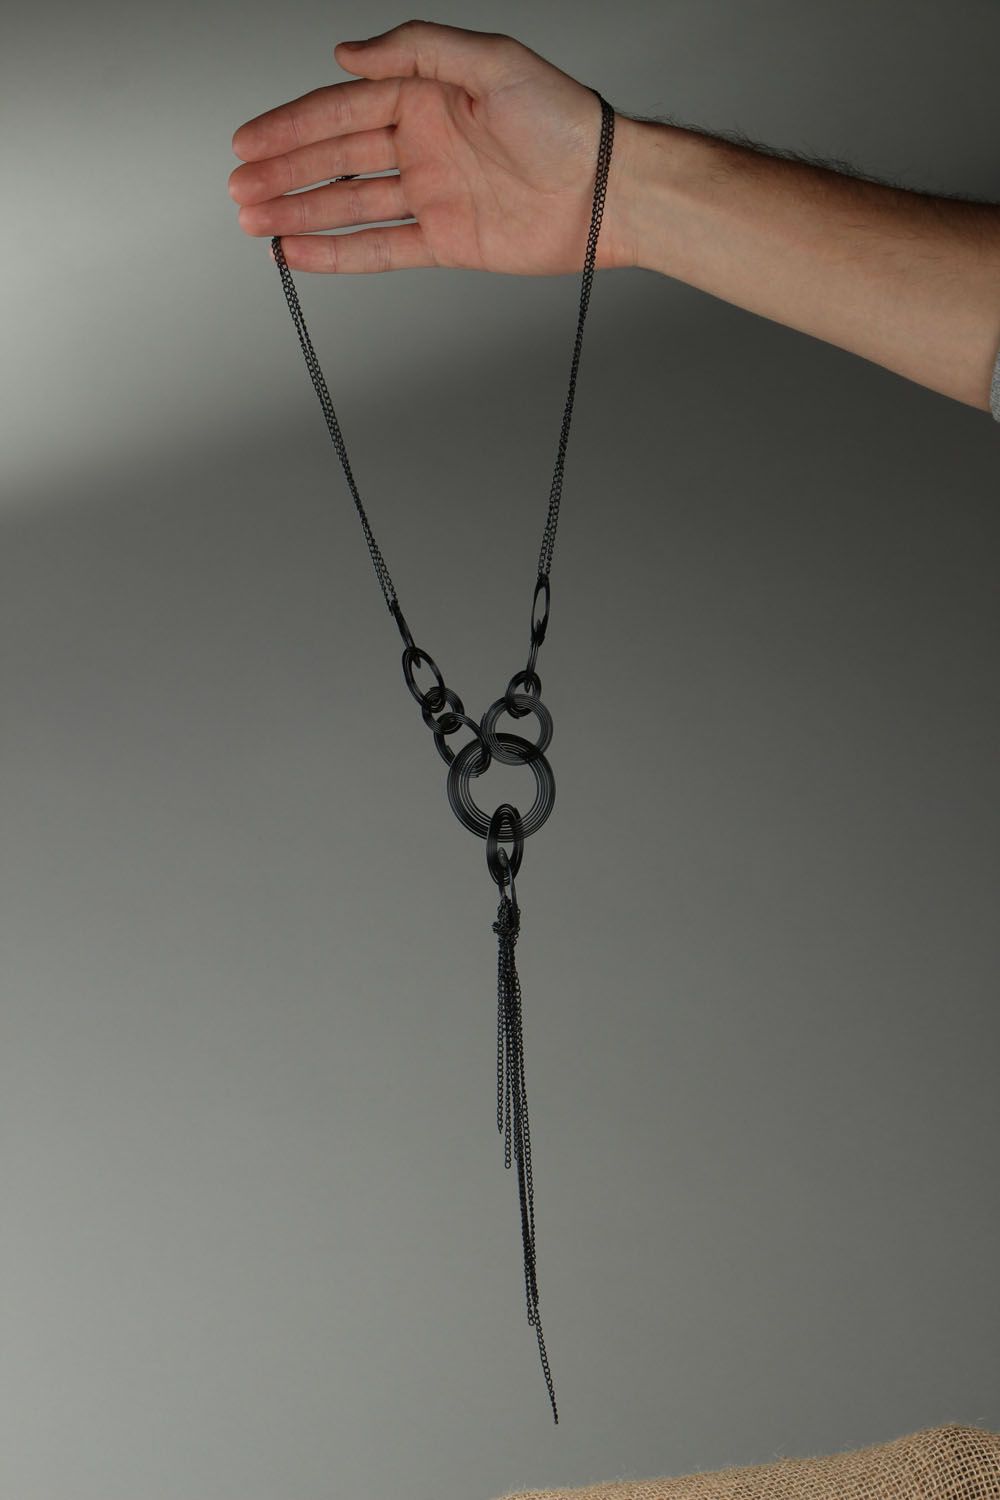 Ferrous metal necklace photo 4